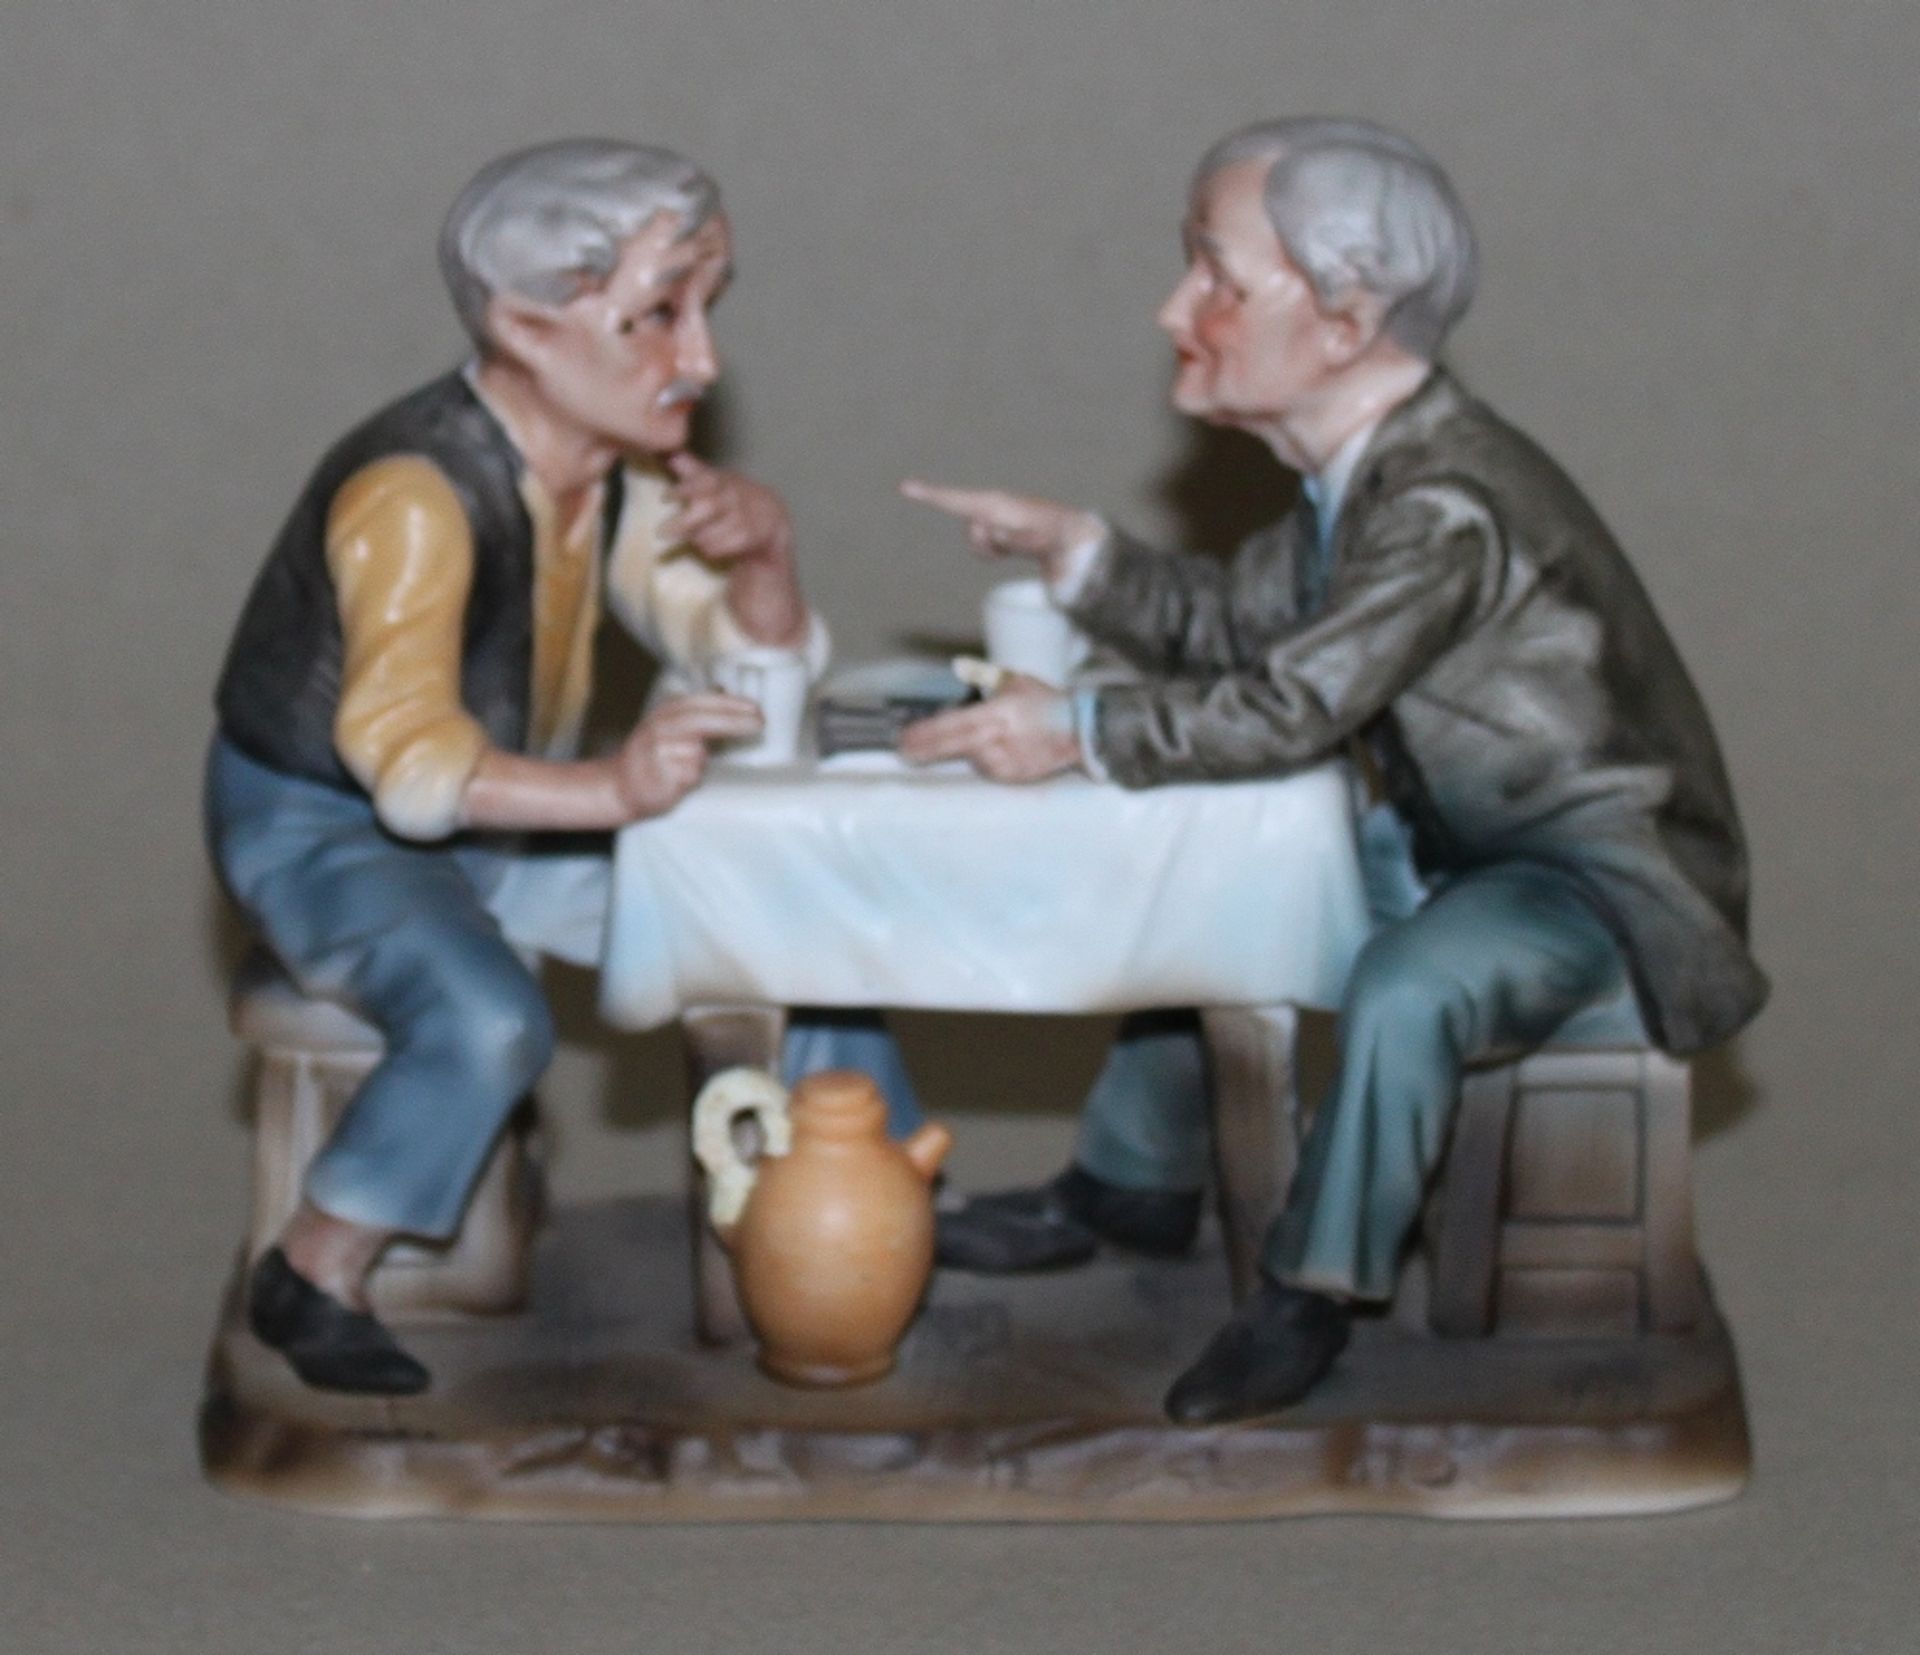 Europa. Zwei Herren beim Schachspiel. Polychrome Figurengruppe aus porzellanartigem Material ohne